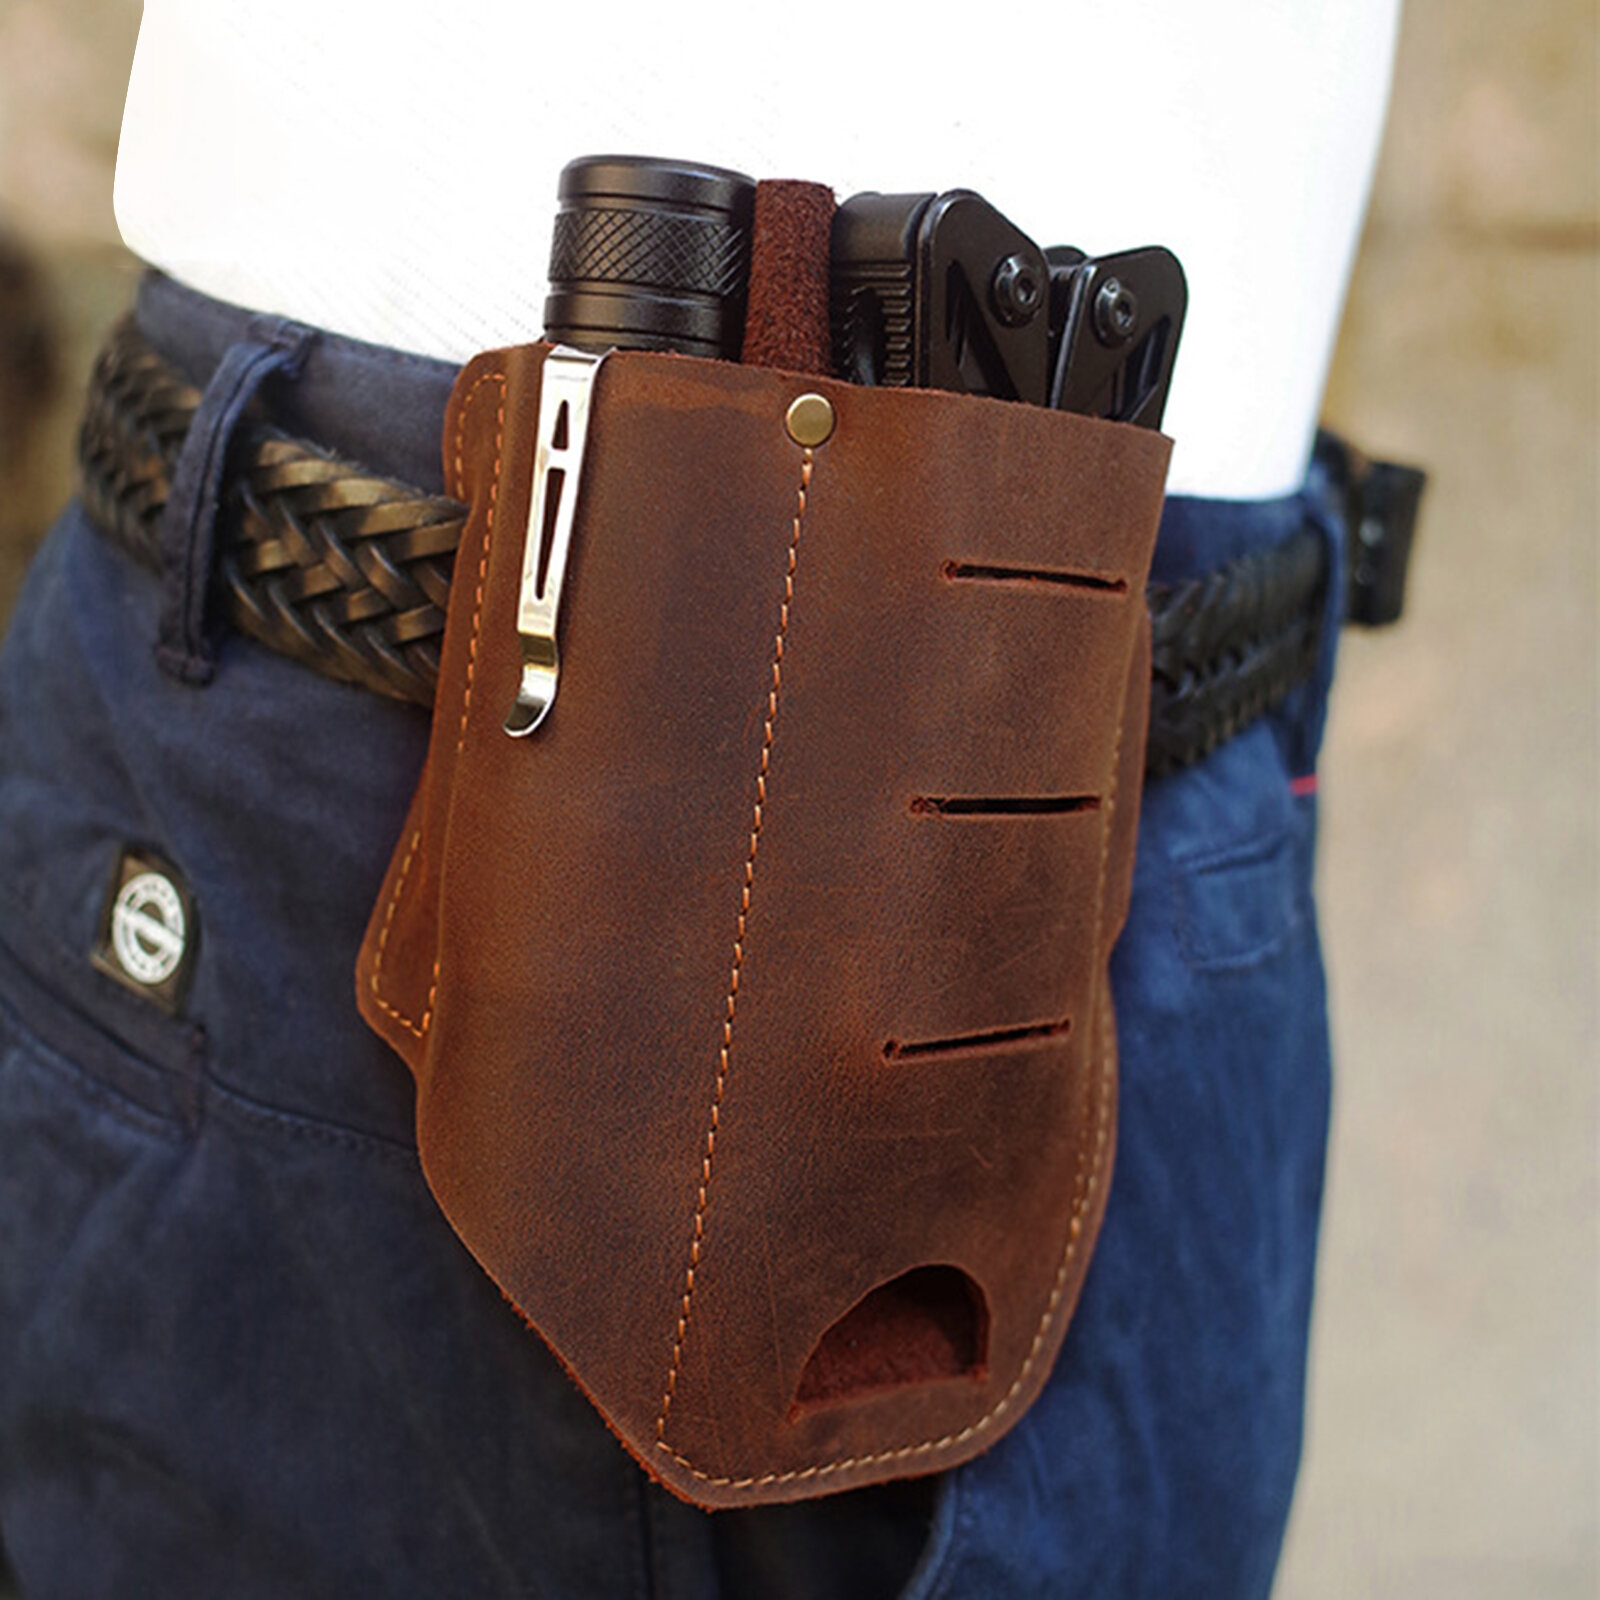 

Menico Cowhide EDC Bag Wear-resistant Multi-functional Portable Tool Belt Loop Waist Bag